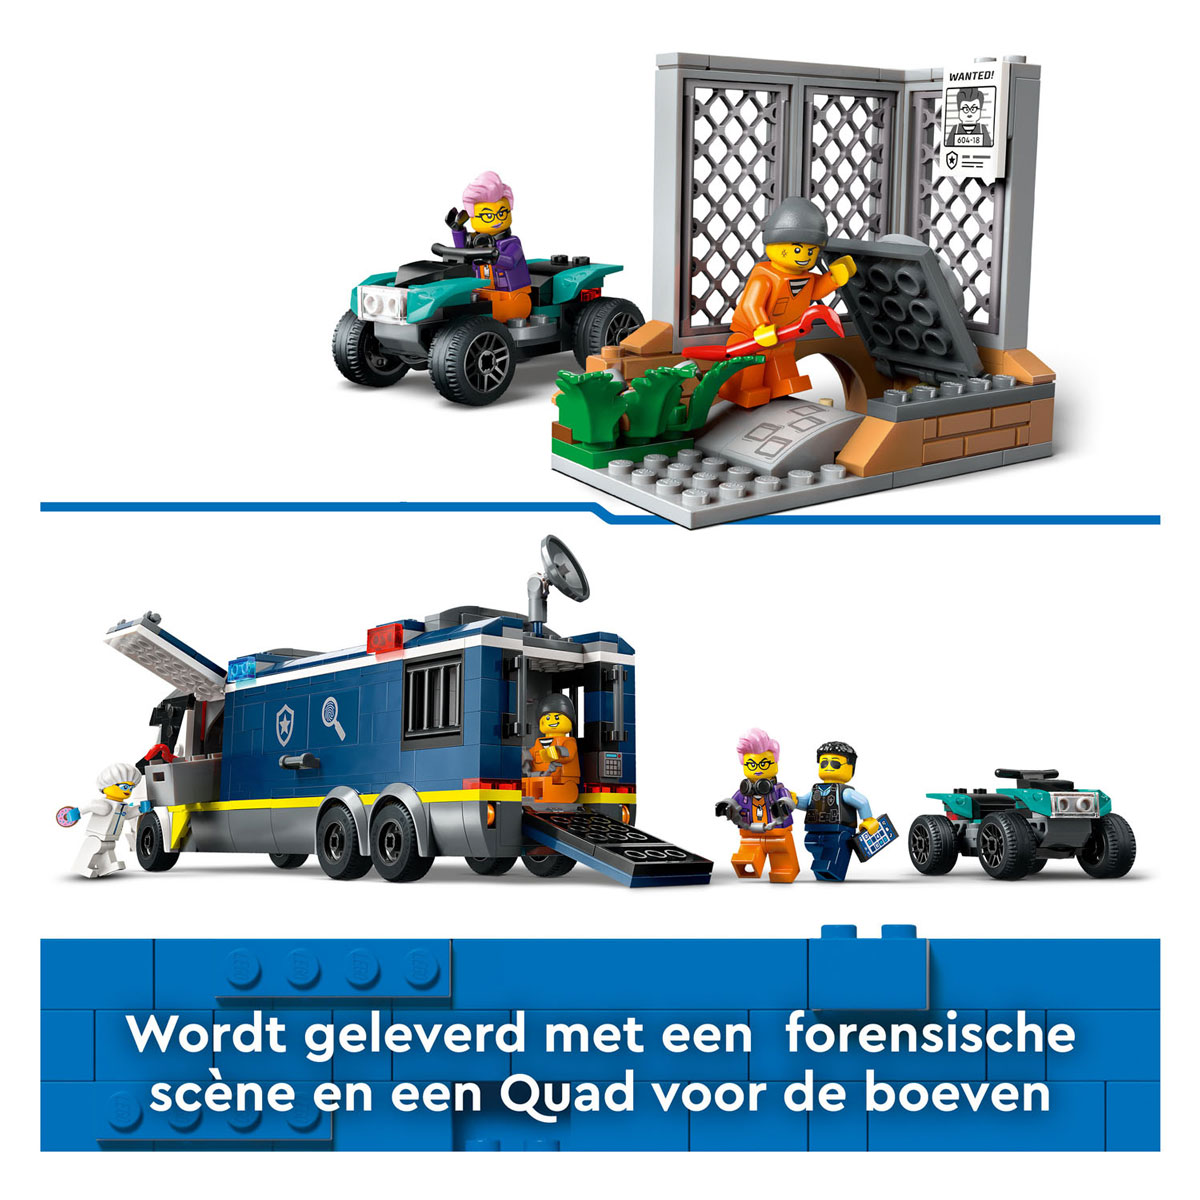 LEGO City 60418 Politielaboratorium In Truck